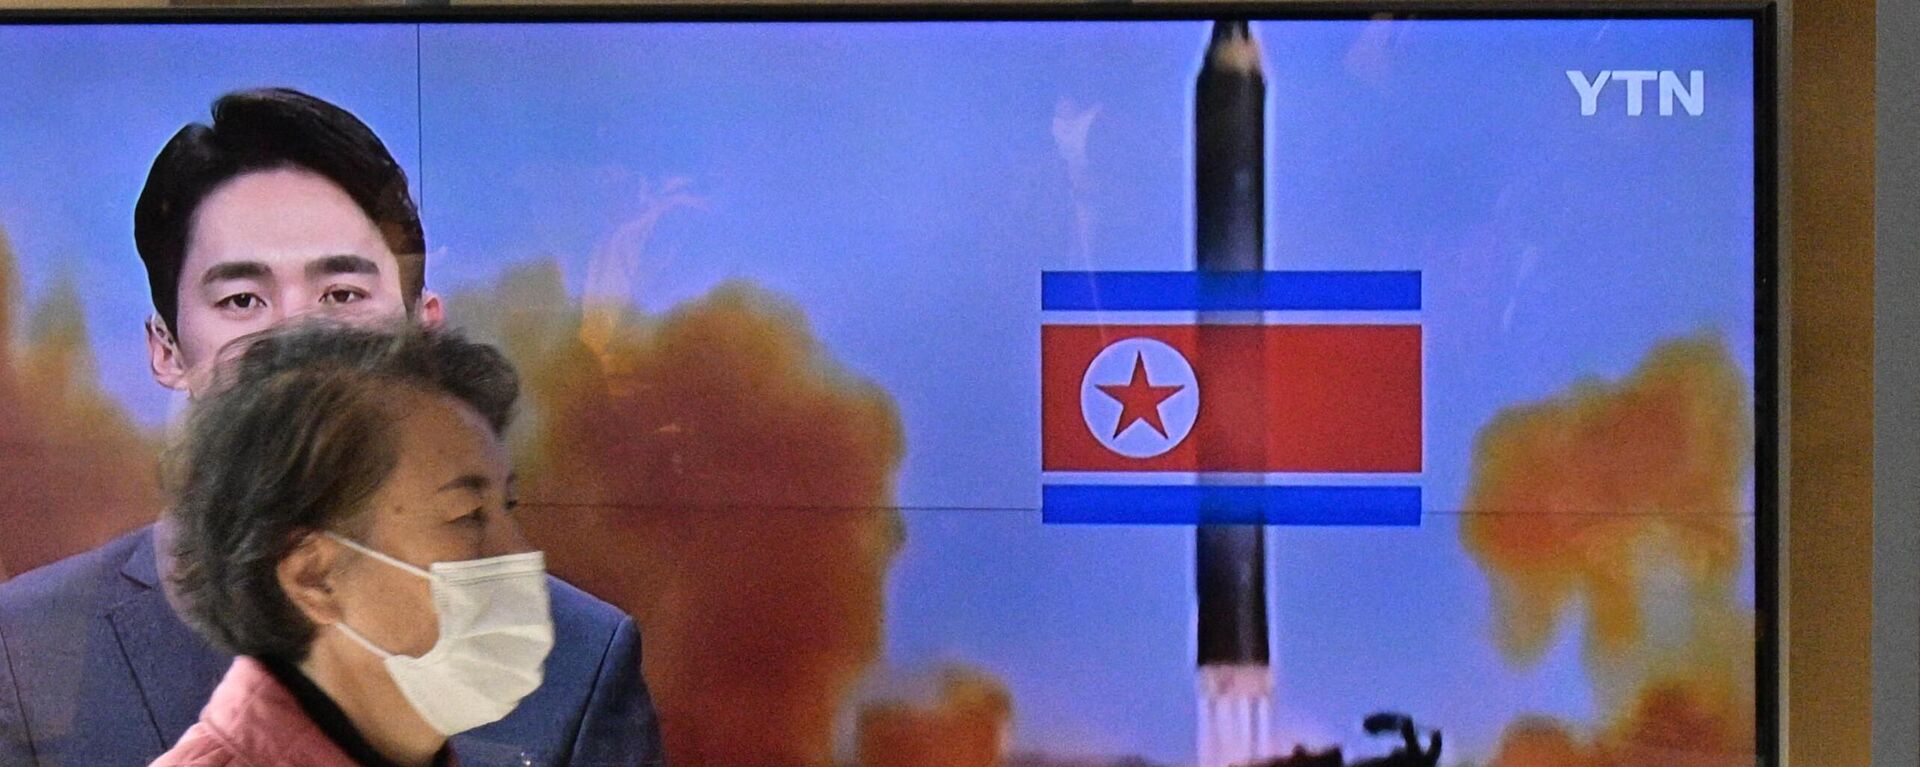 Una mujer camina frente a un televisor durante una transmisión de una prueba con misiles de Corea del Norte, el 17 de noviembre de 2022 - Sputnik Mundo, 1920, 18.11.2022